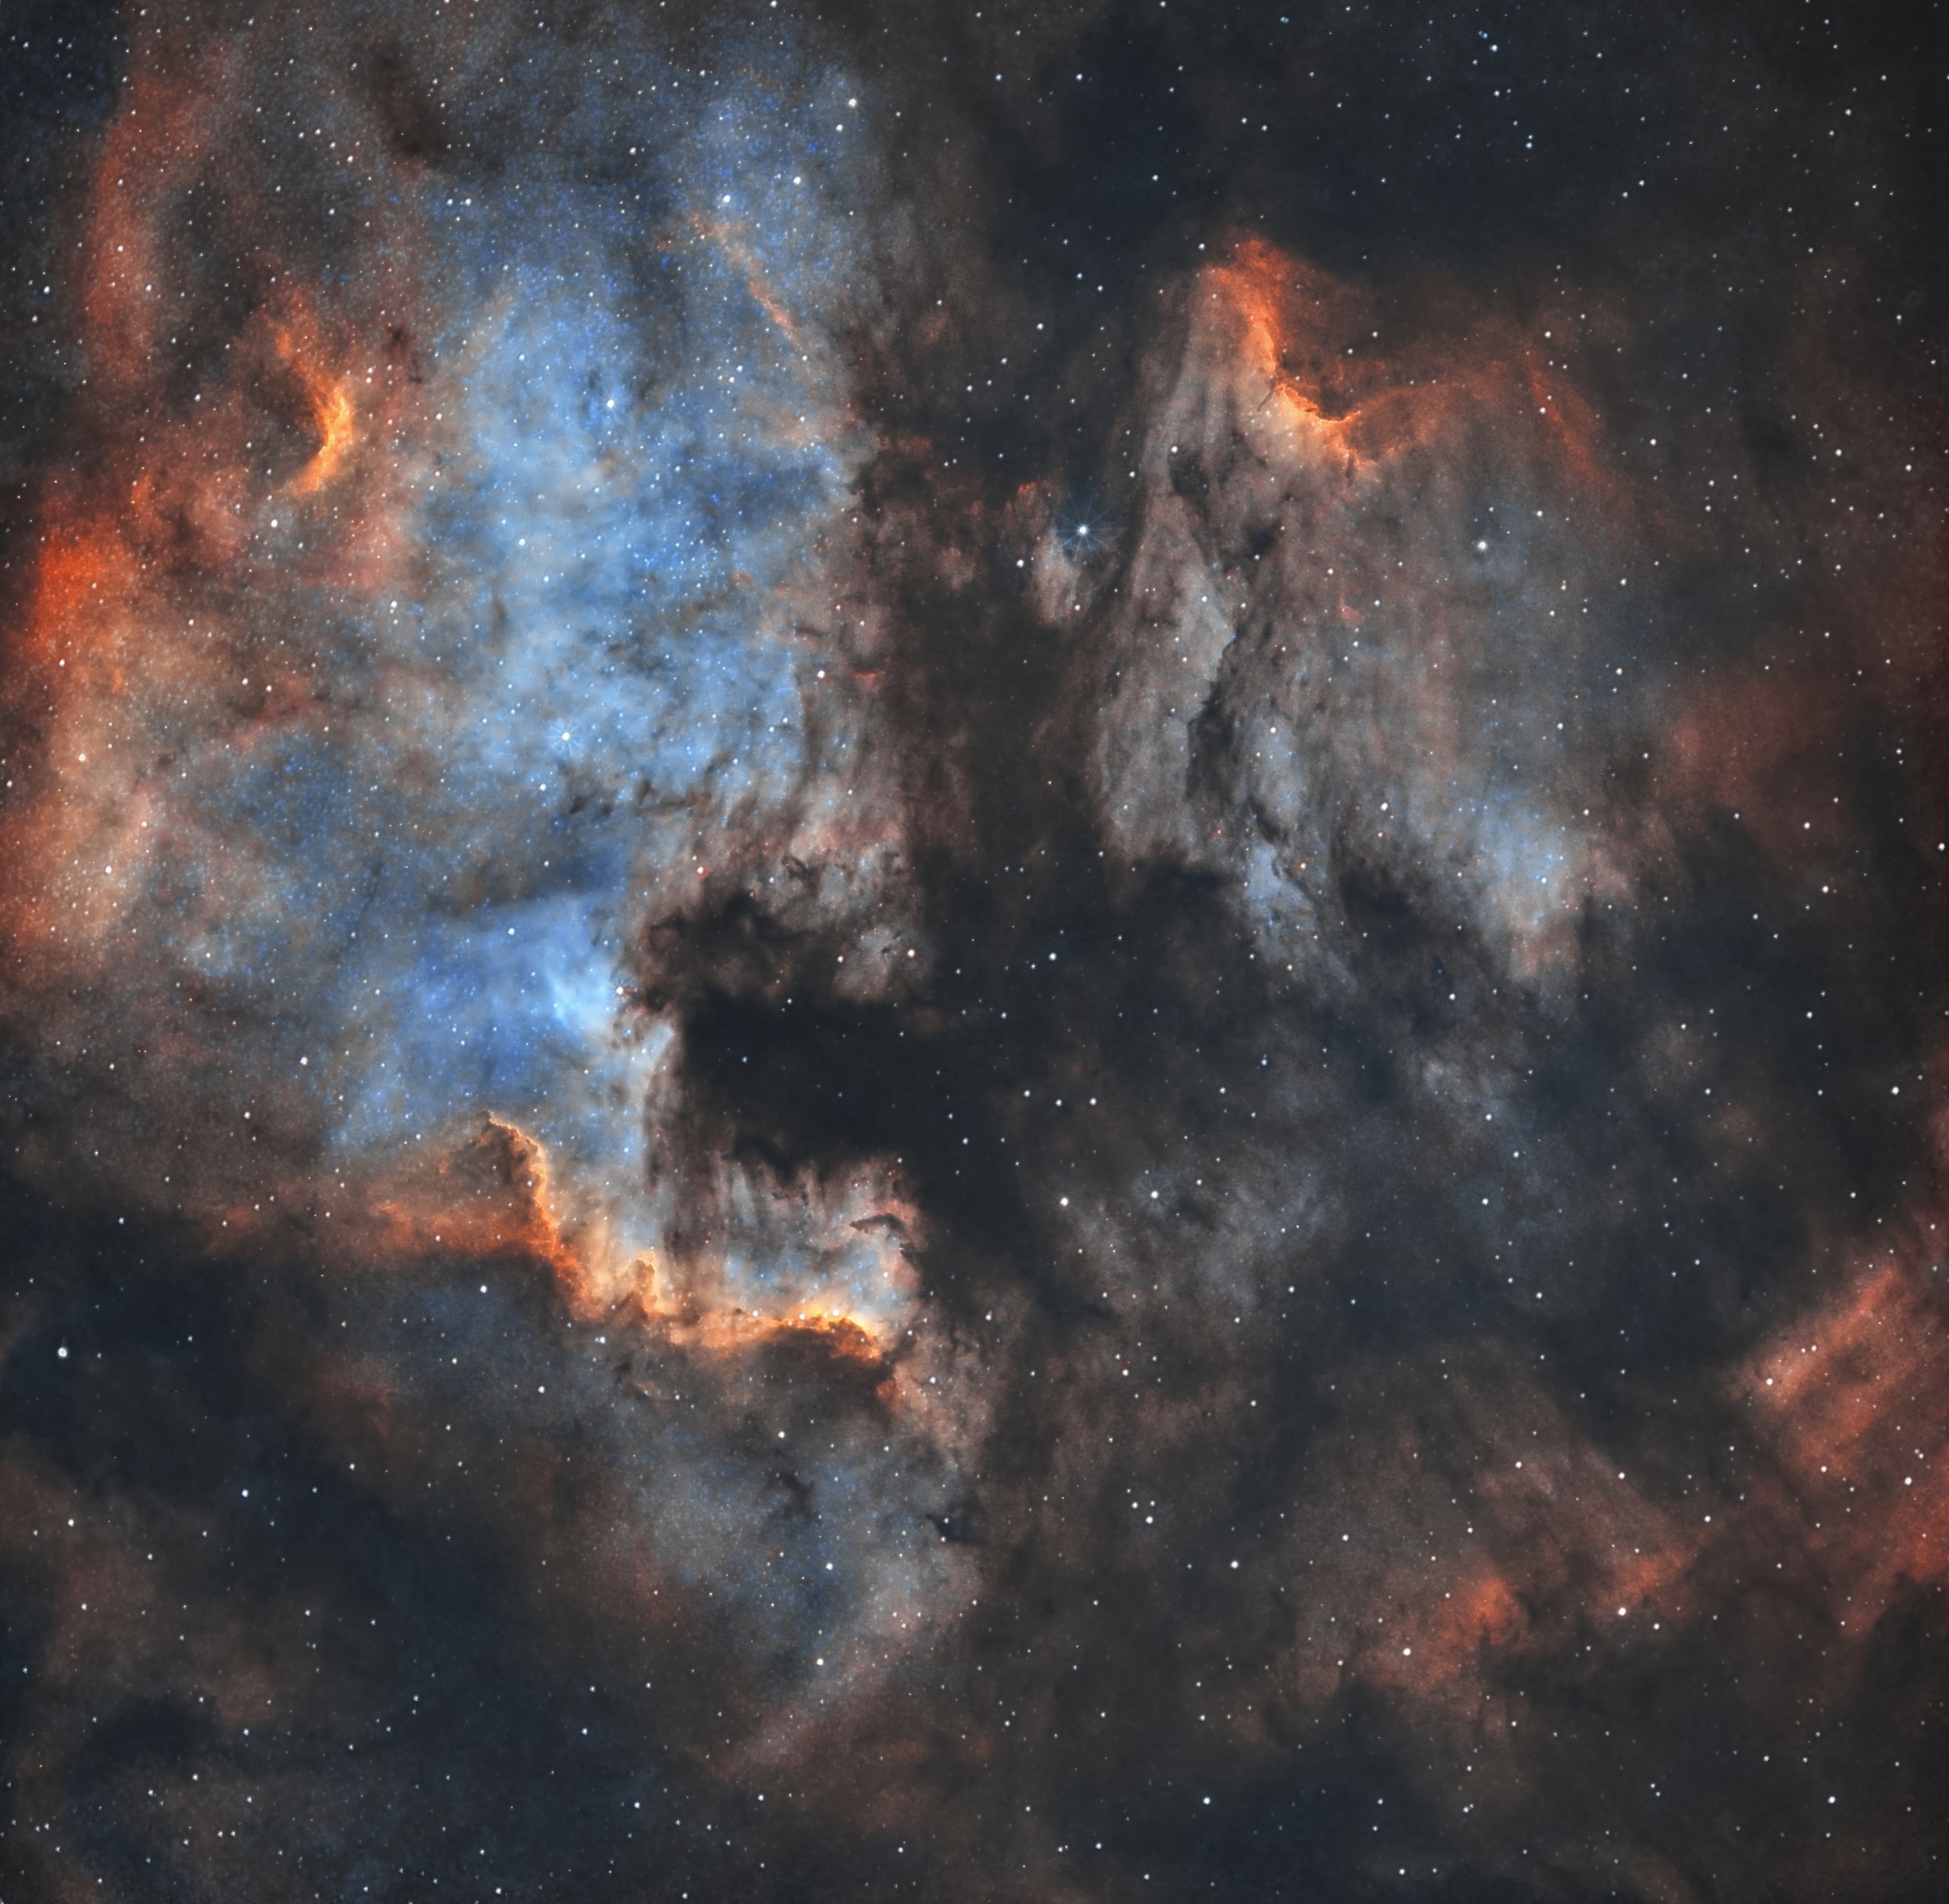 Северная Америка (NGC 7000) и Пеликан (IC 5070 и IC 5067) 1